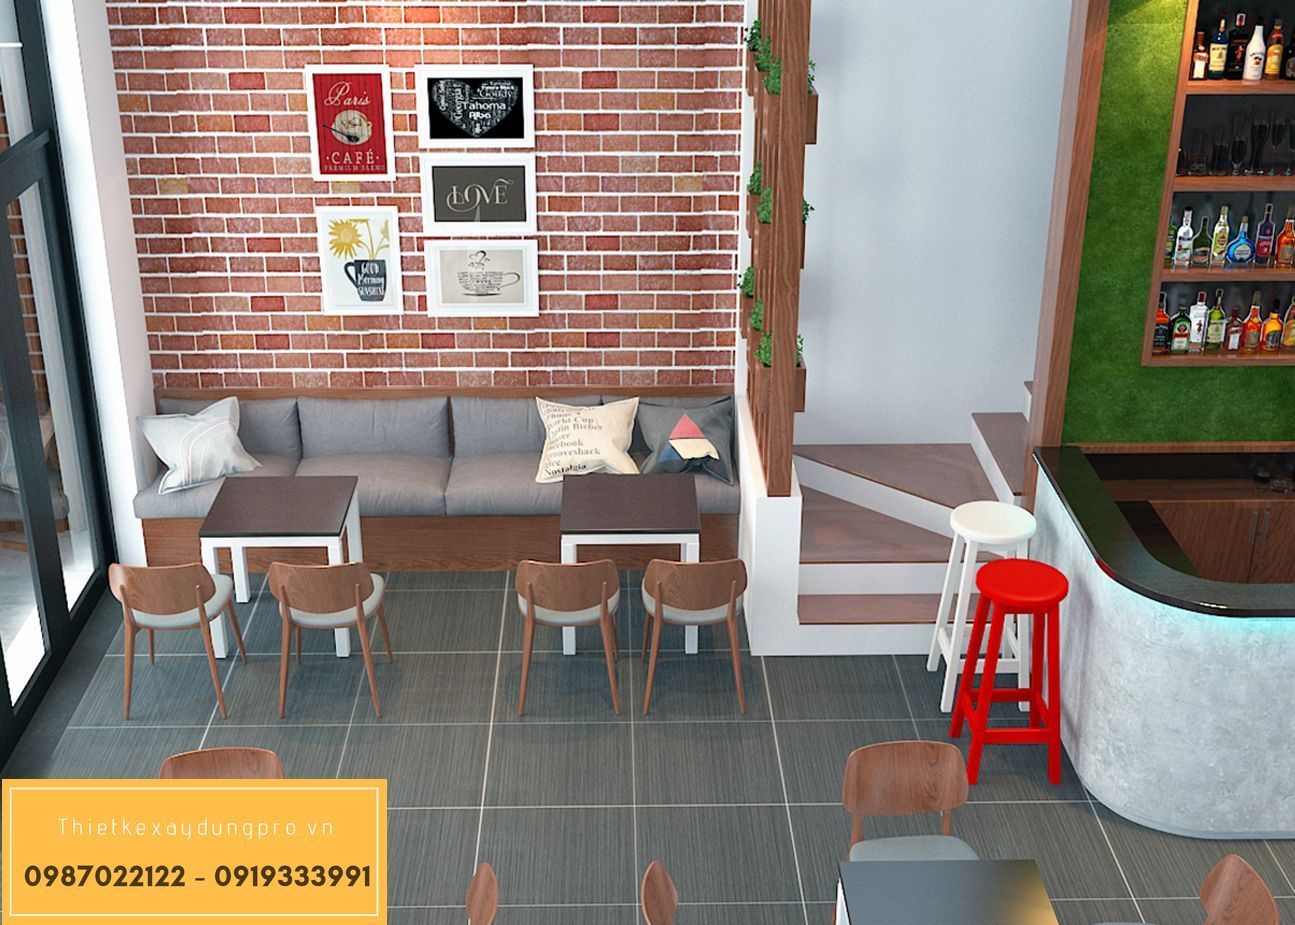 Ý tưởng thiết kế quán cafe